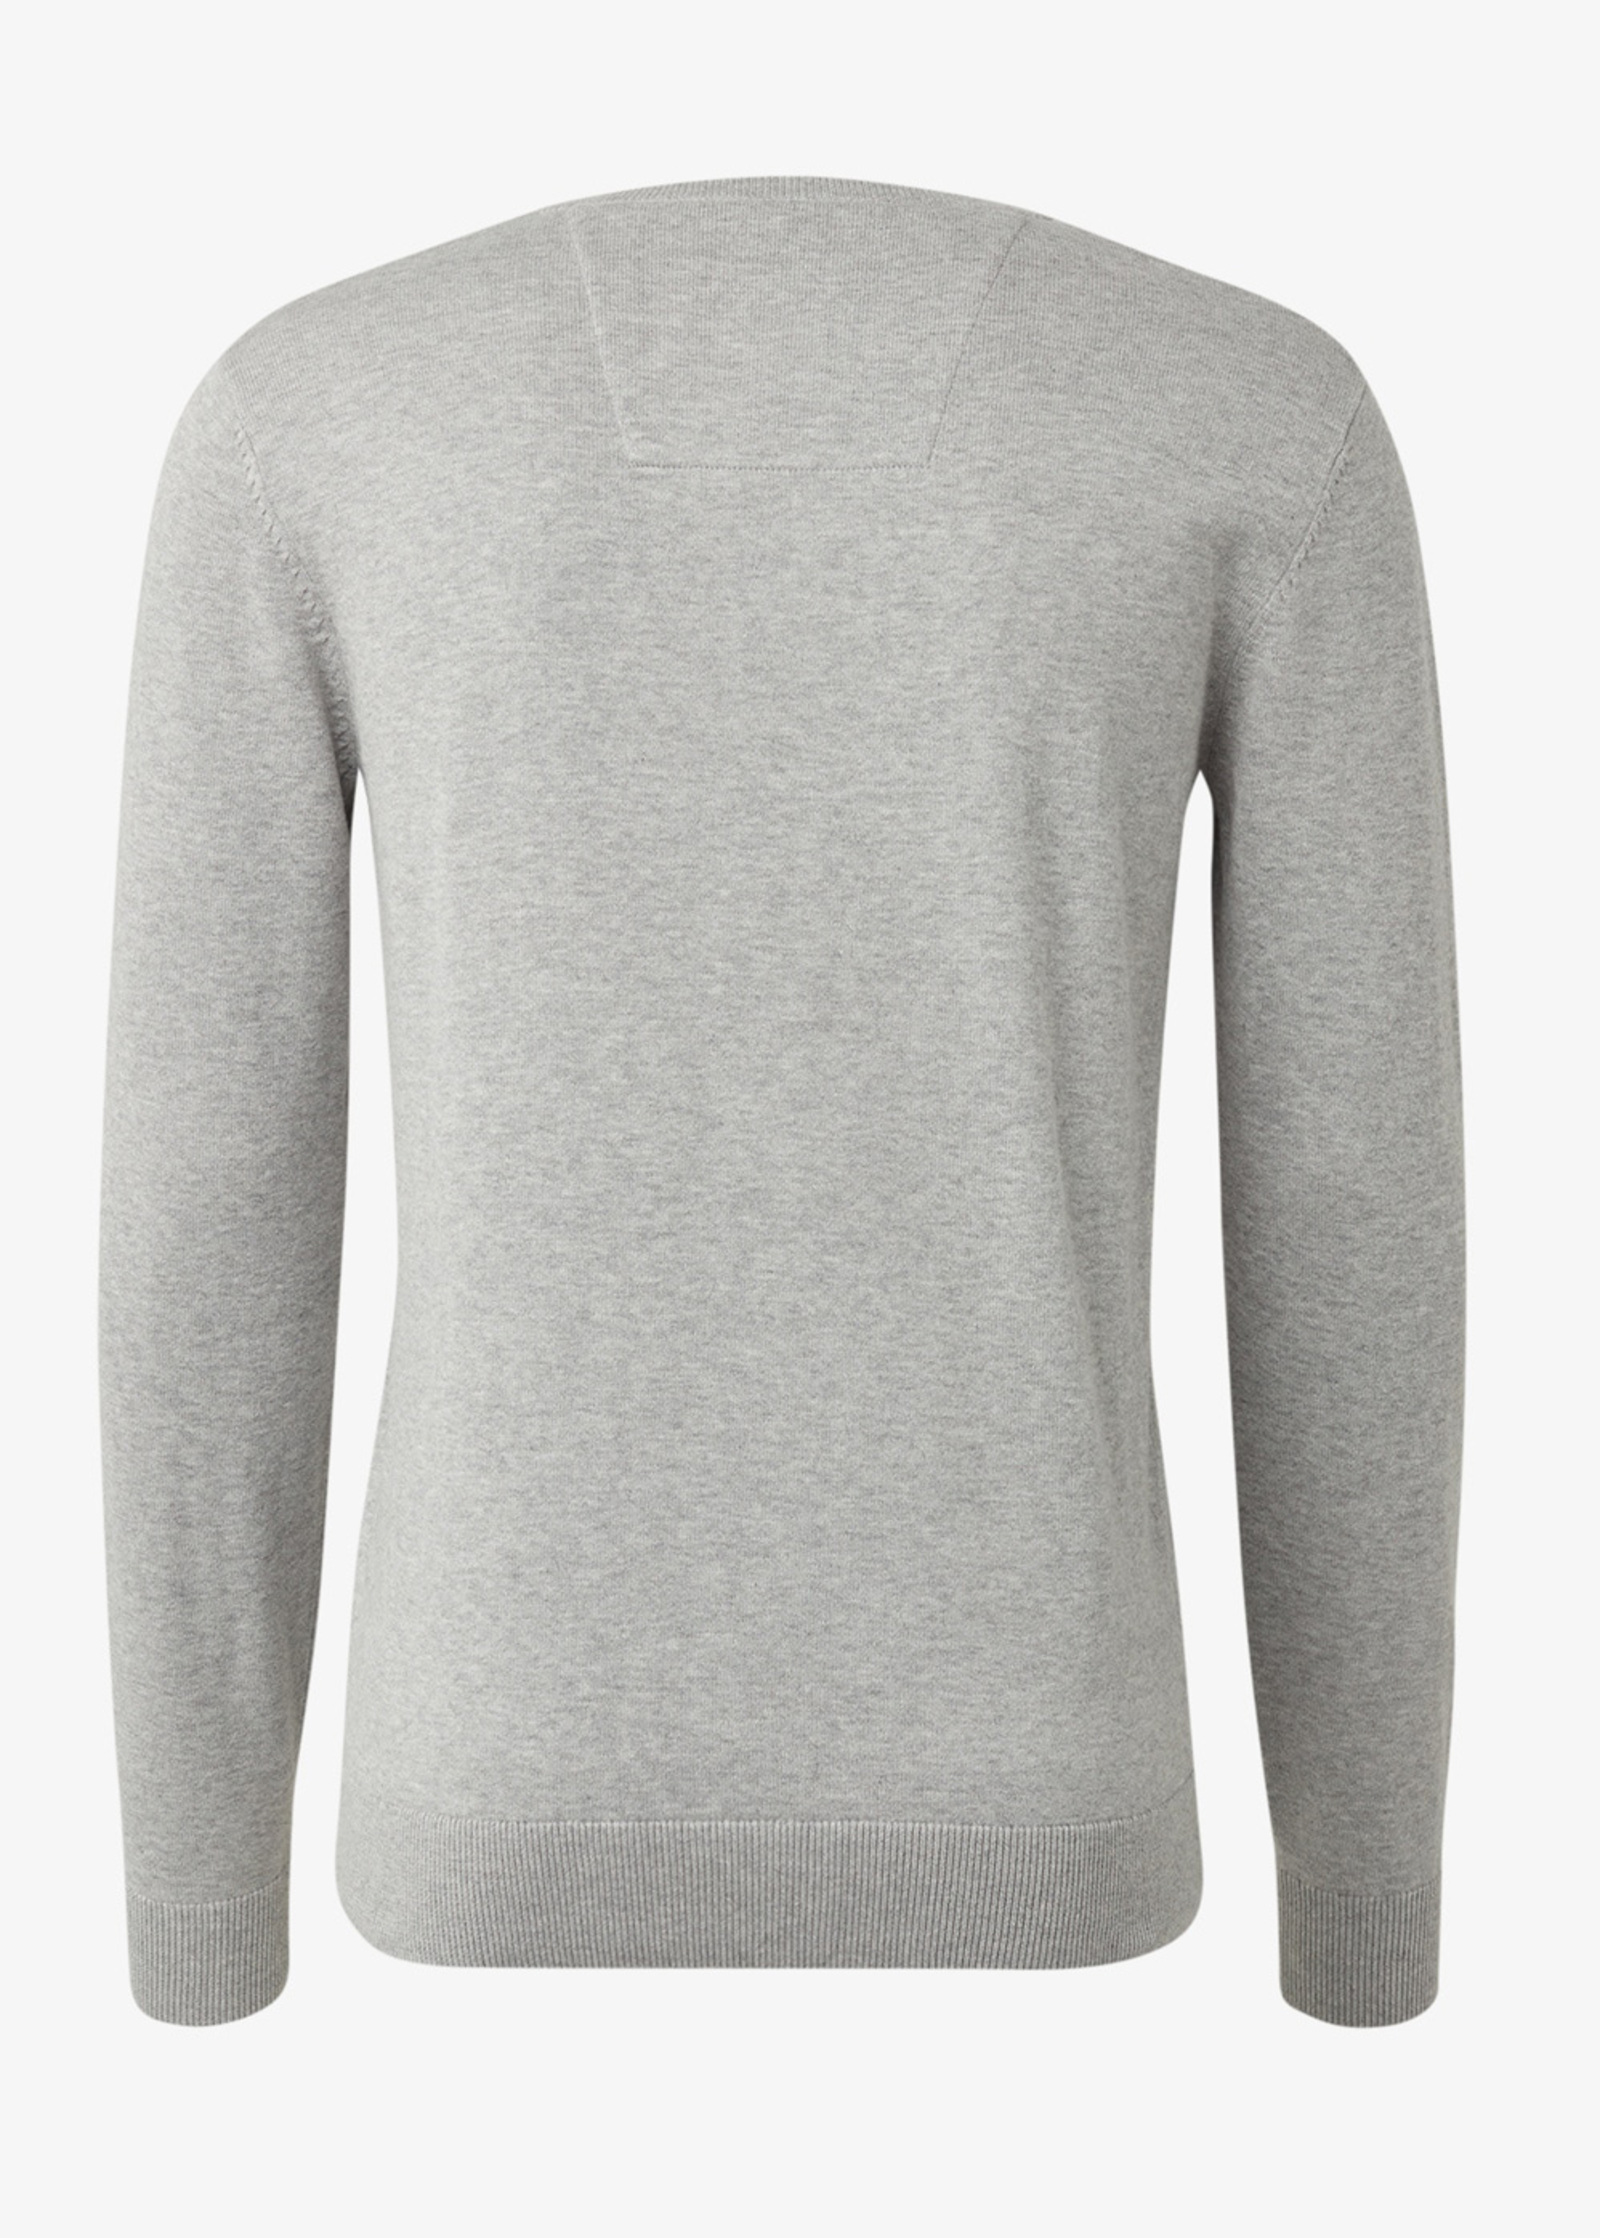 Tom Light 1012819-14427 Simple Tailor Melange Jumper Grey Soft S Size Knitted -